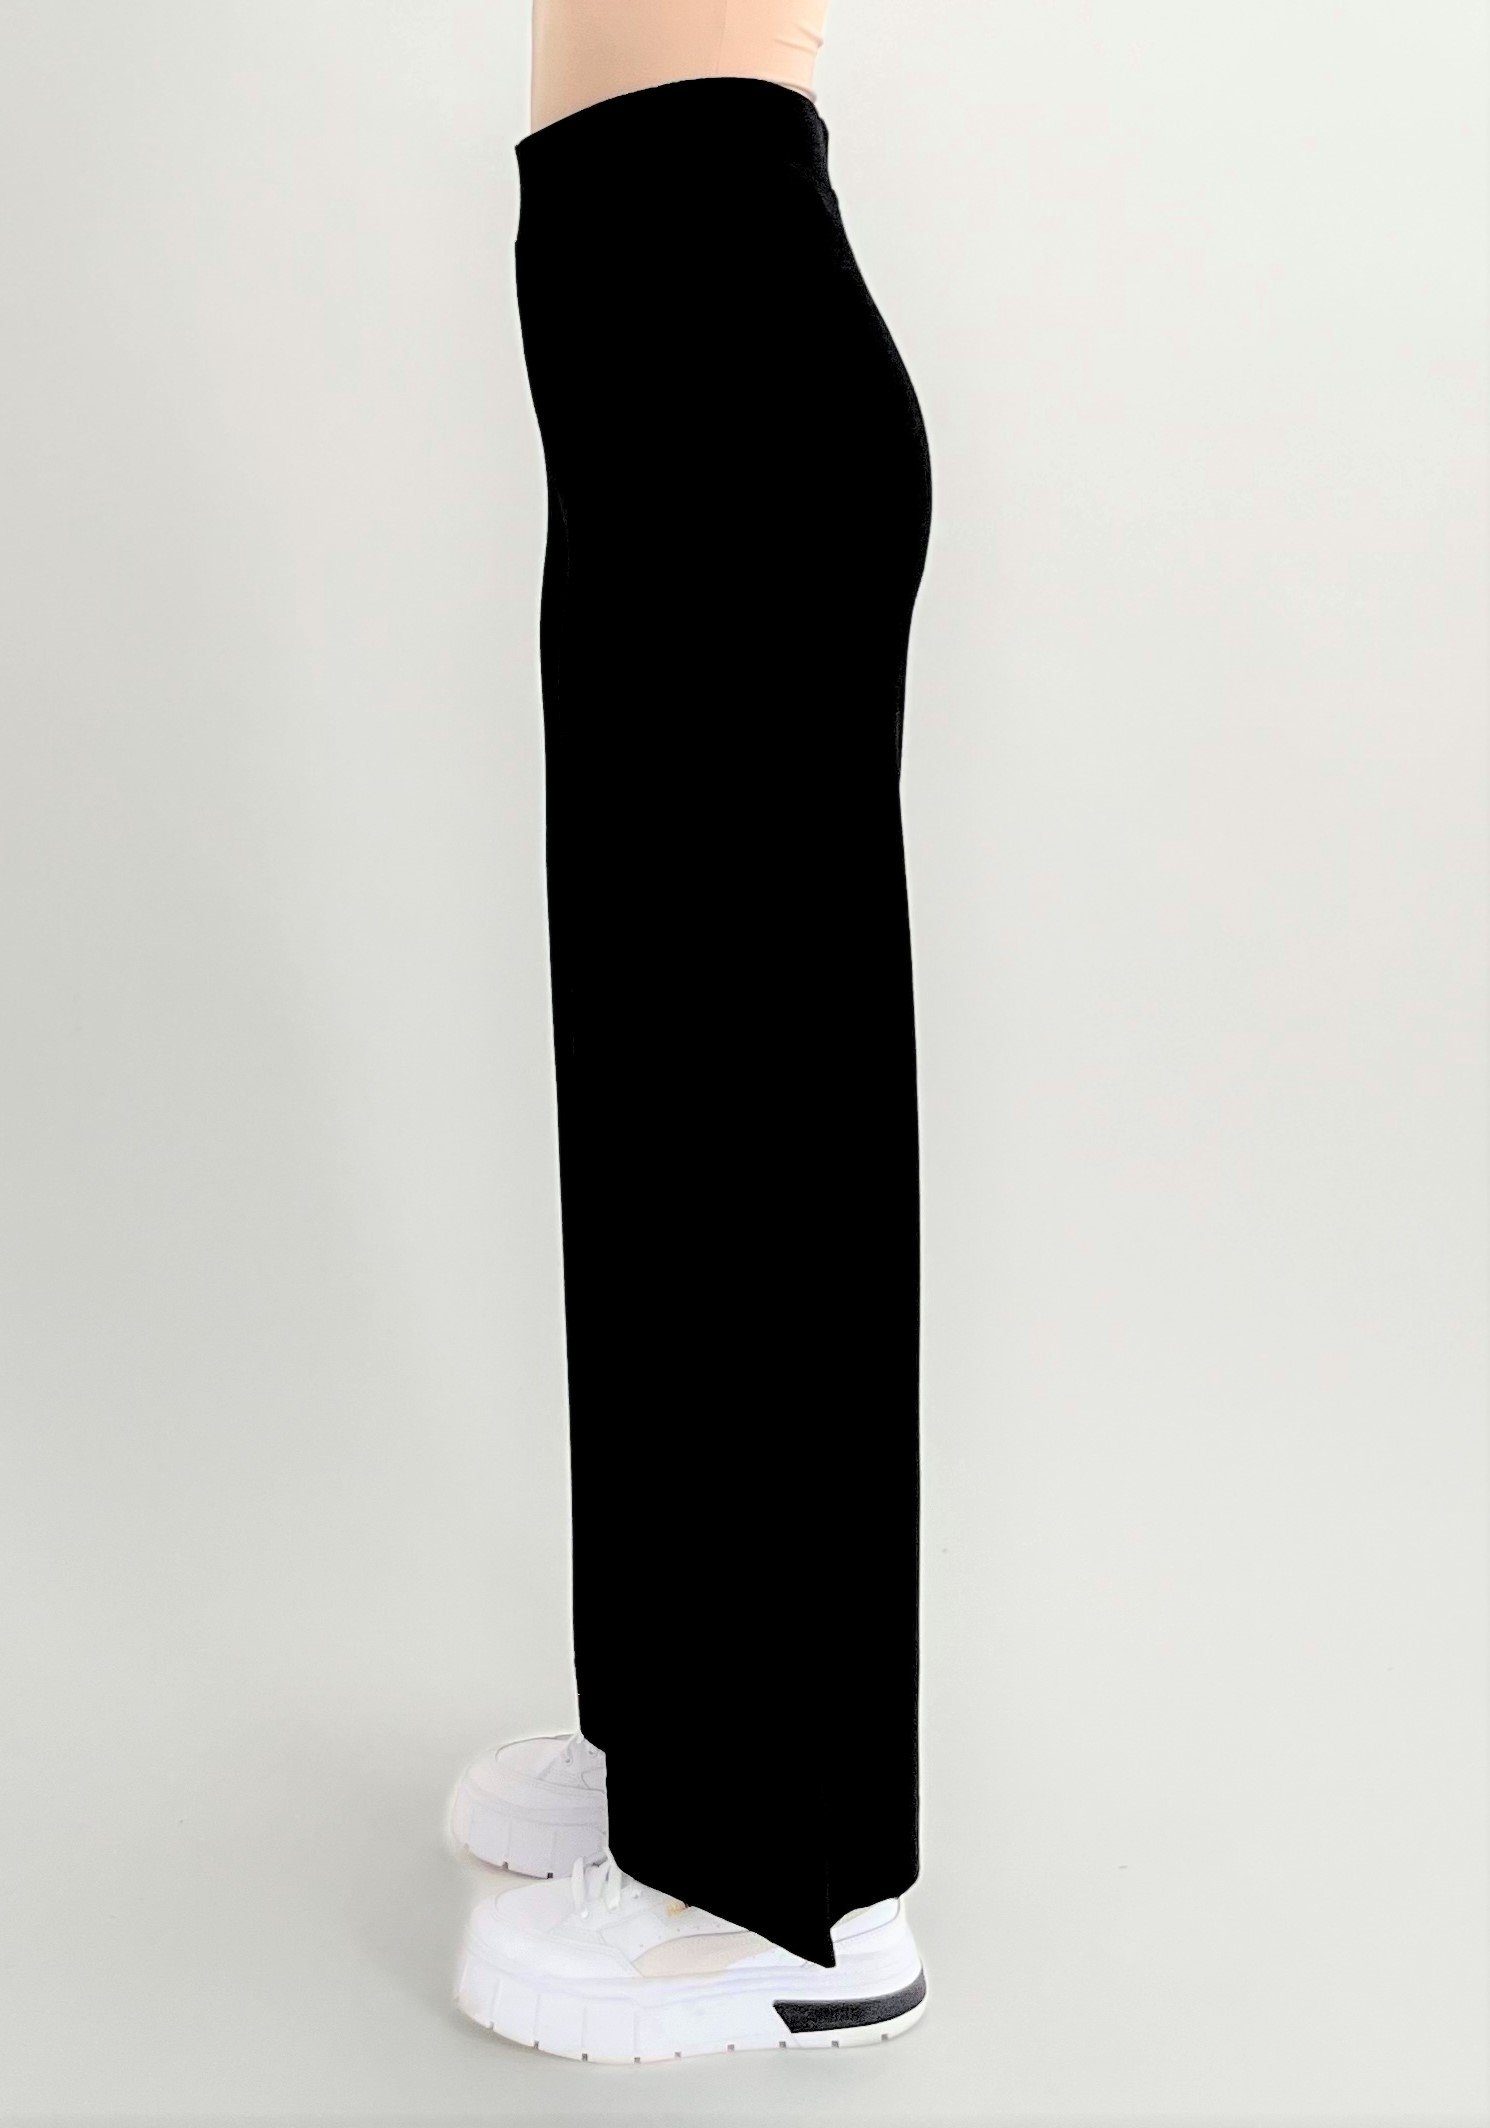 Zuckerwatte Strickhose mit weitem Bein, schwarz Viskose Superstretch